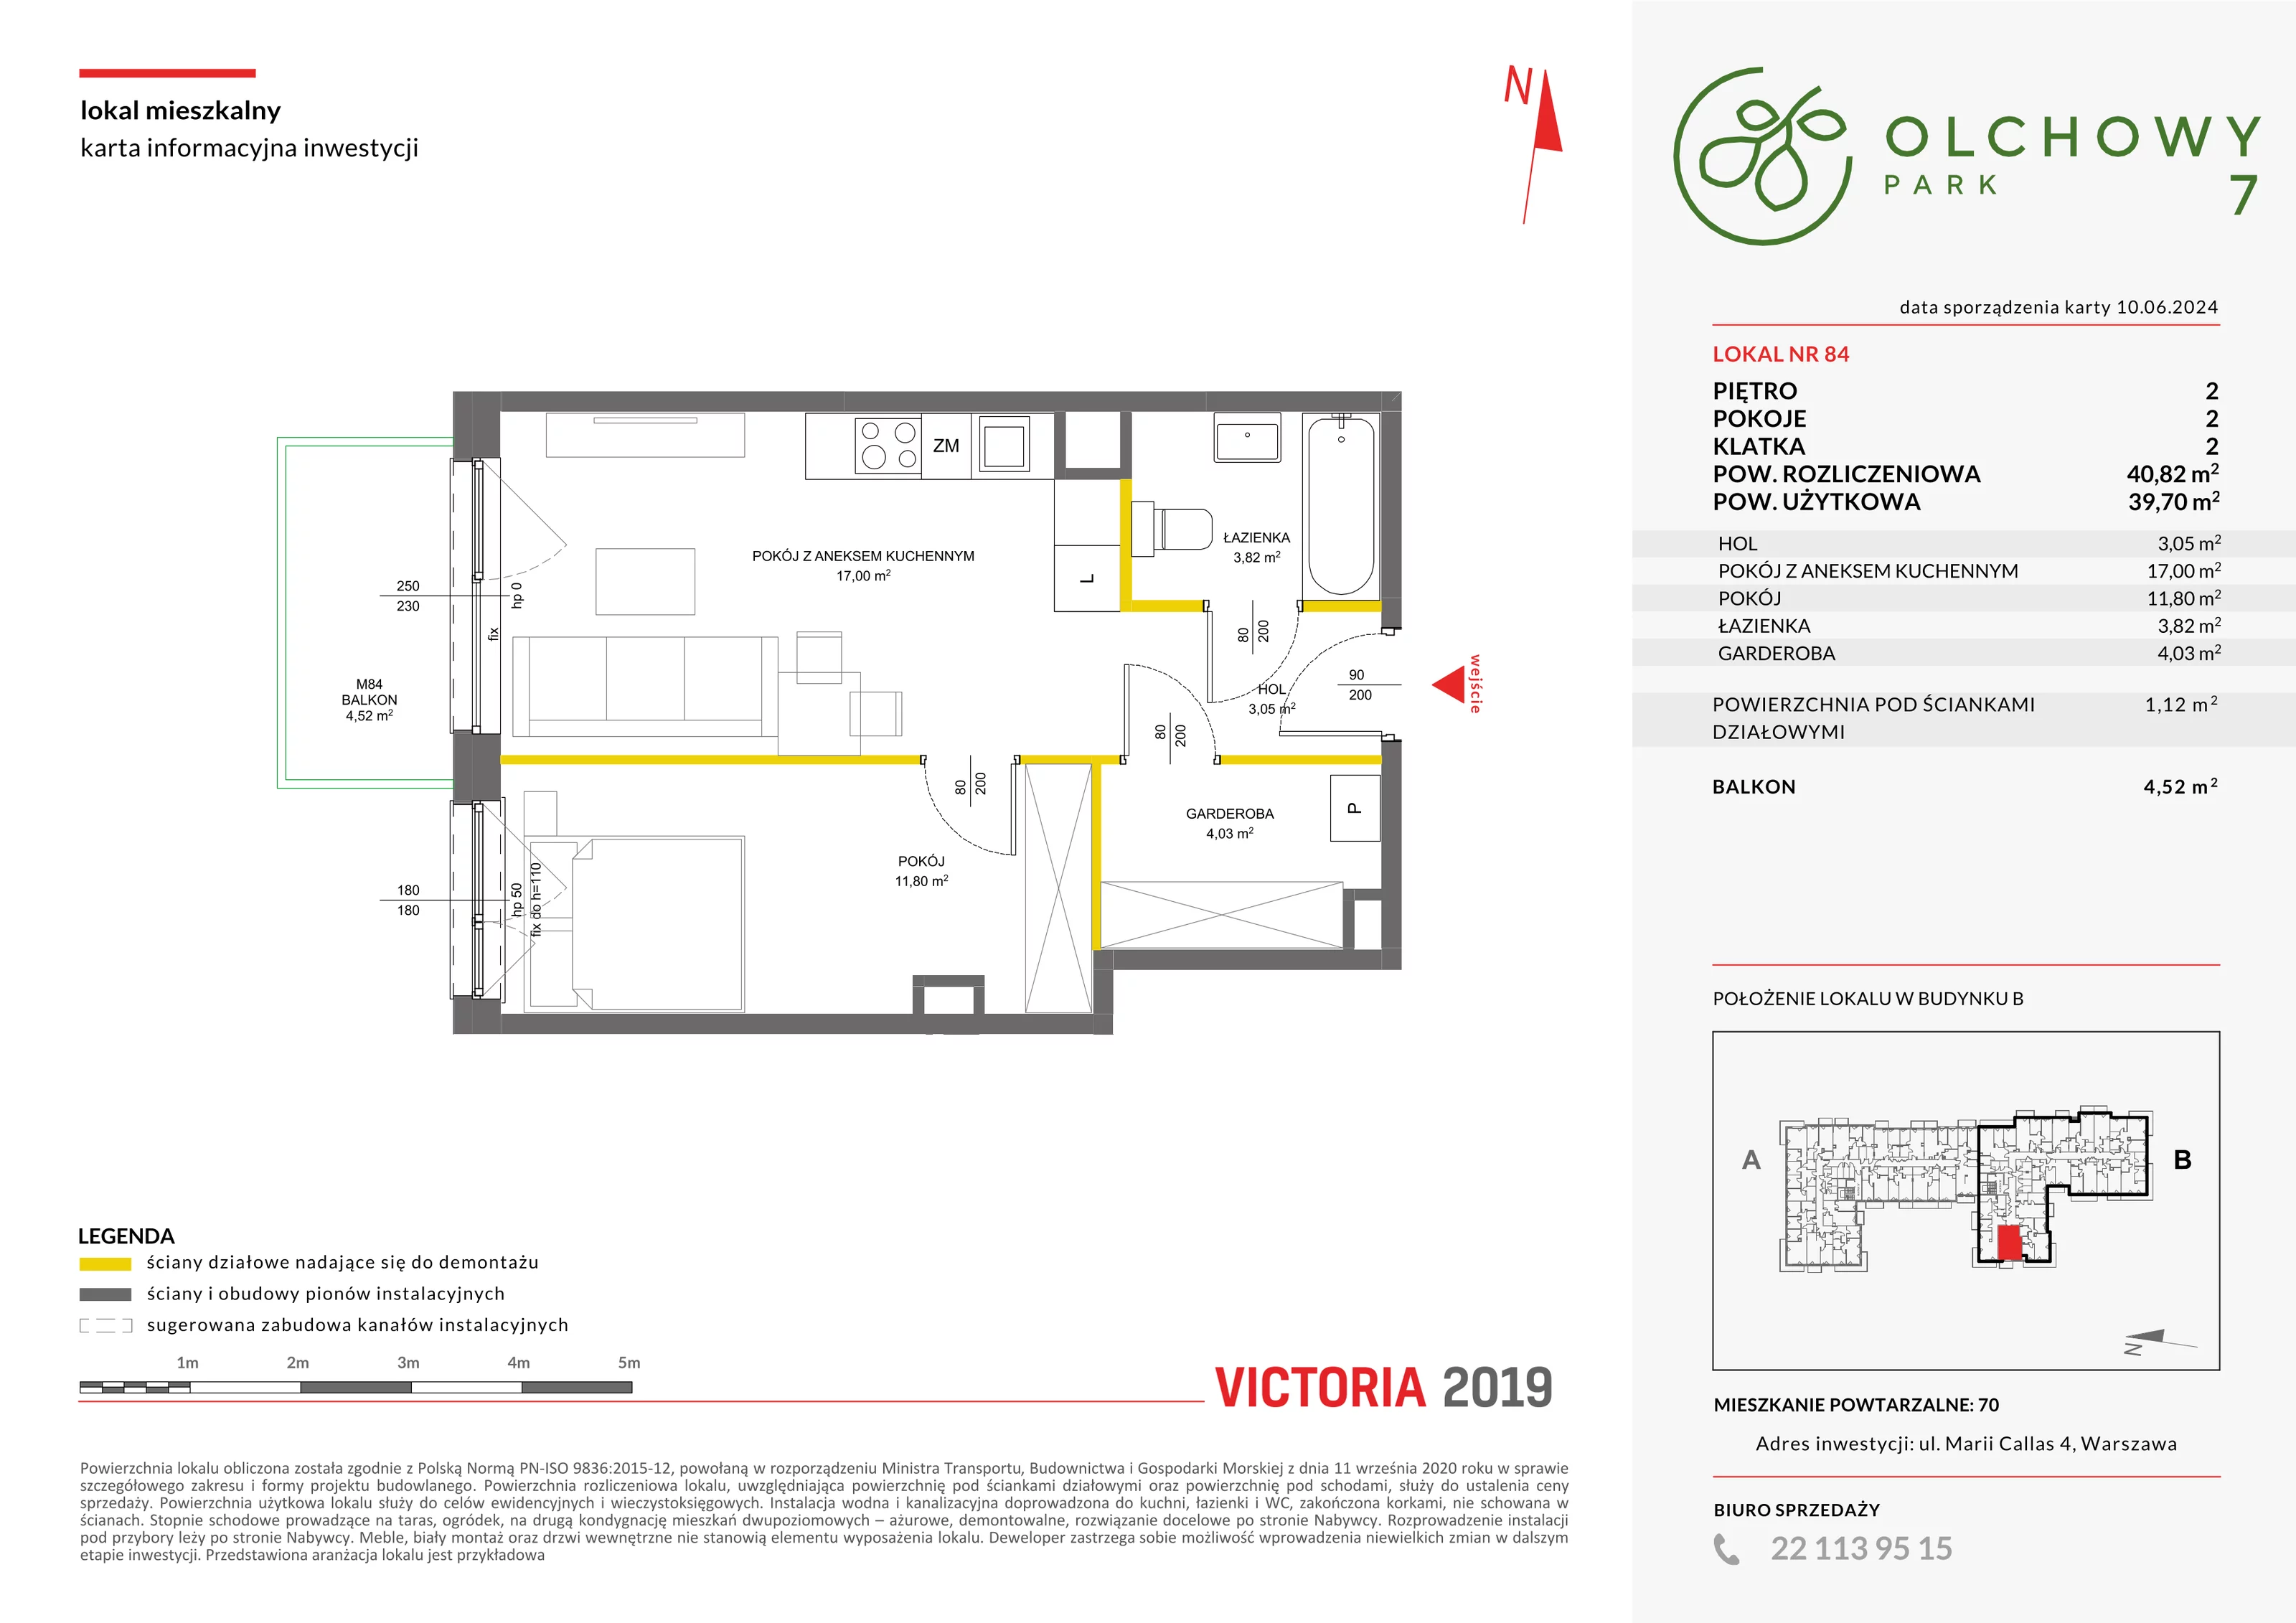 Mieszkanie 40,82 m², piętro 2, oferta nr VII/84, Olchowy Park 7, Warszawa, Białołęka, Kobiałka, ul. Marii Callas 4A